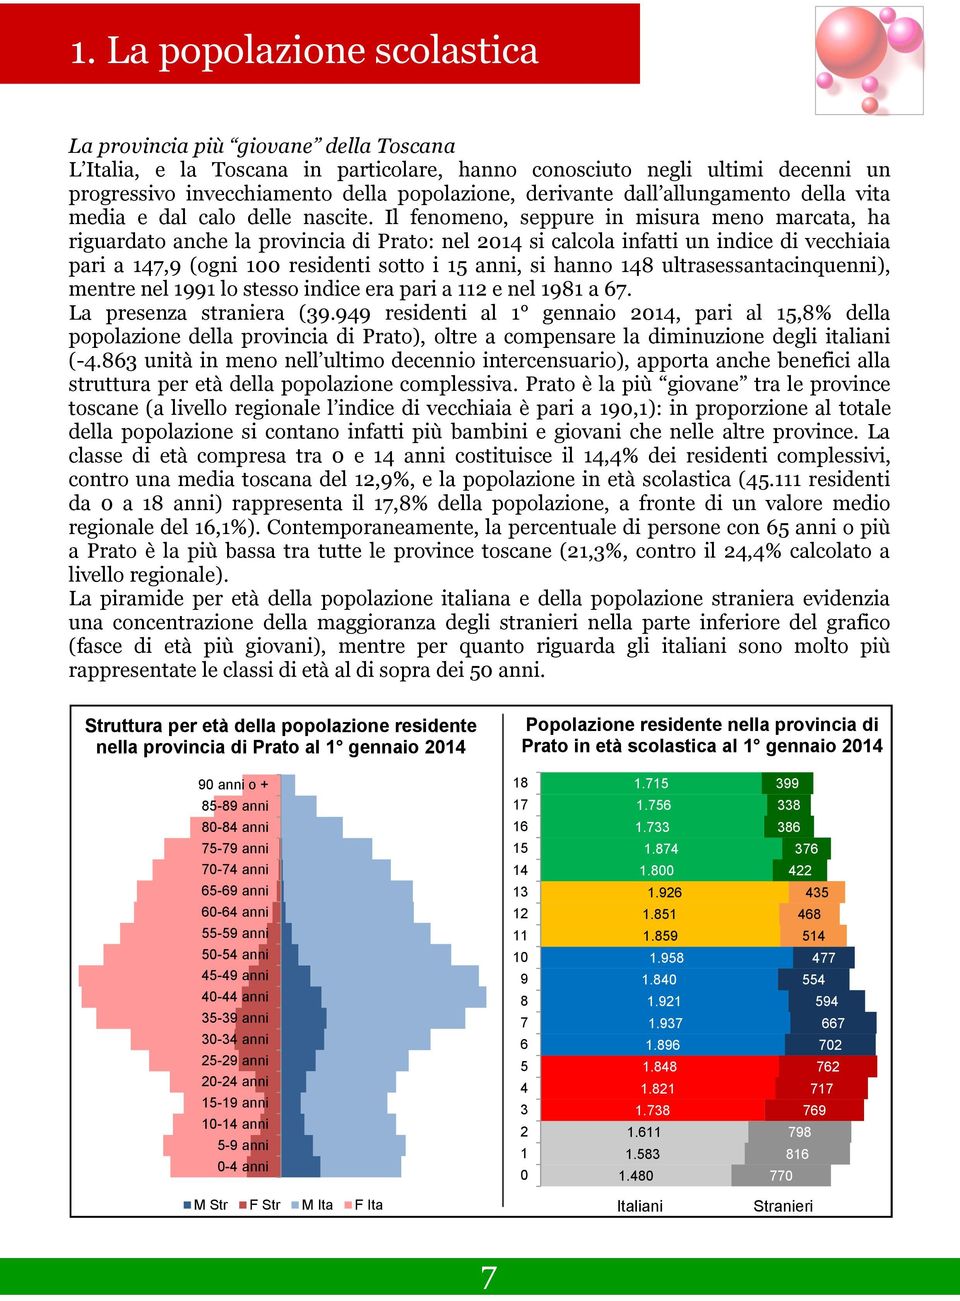 Il fenomeno, seppure in misura meno marcata, ha riguardato anche la provincia di Prato: nel 2014 si calcola infatti un indice di vecchiaia pari a 147,9 (ogni 100 residenti sotto i 15 anni, si hanno